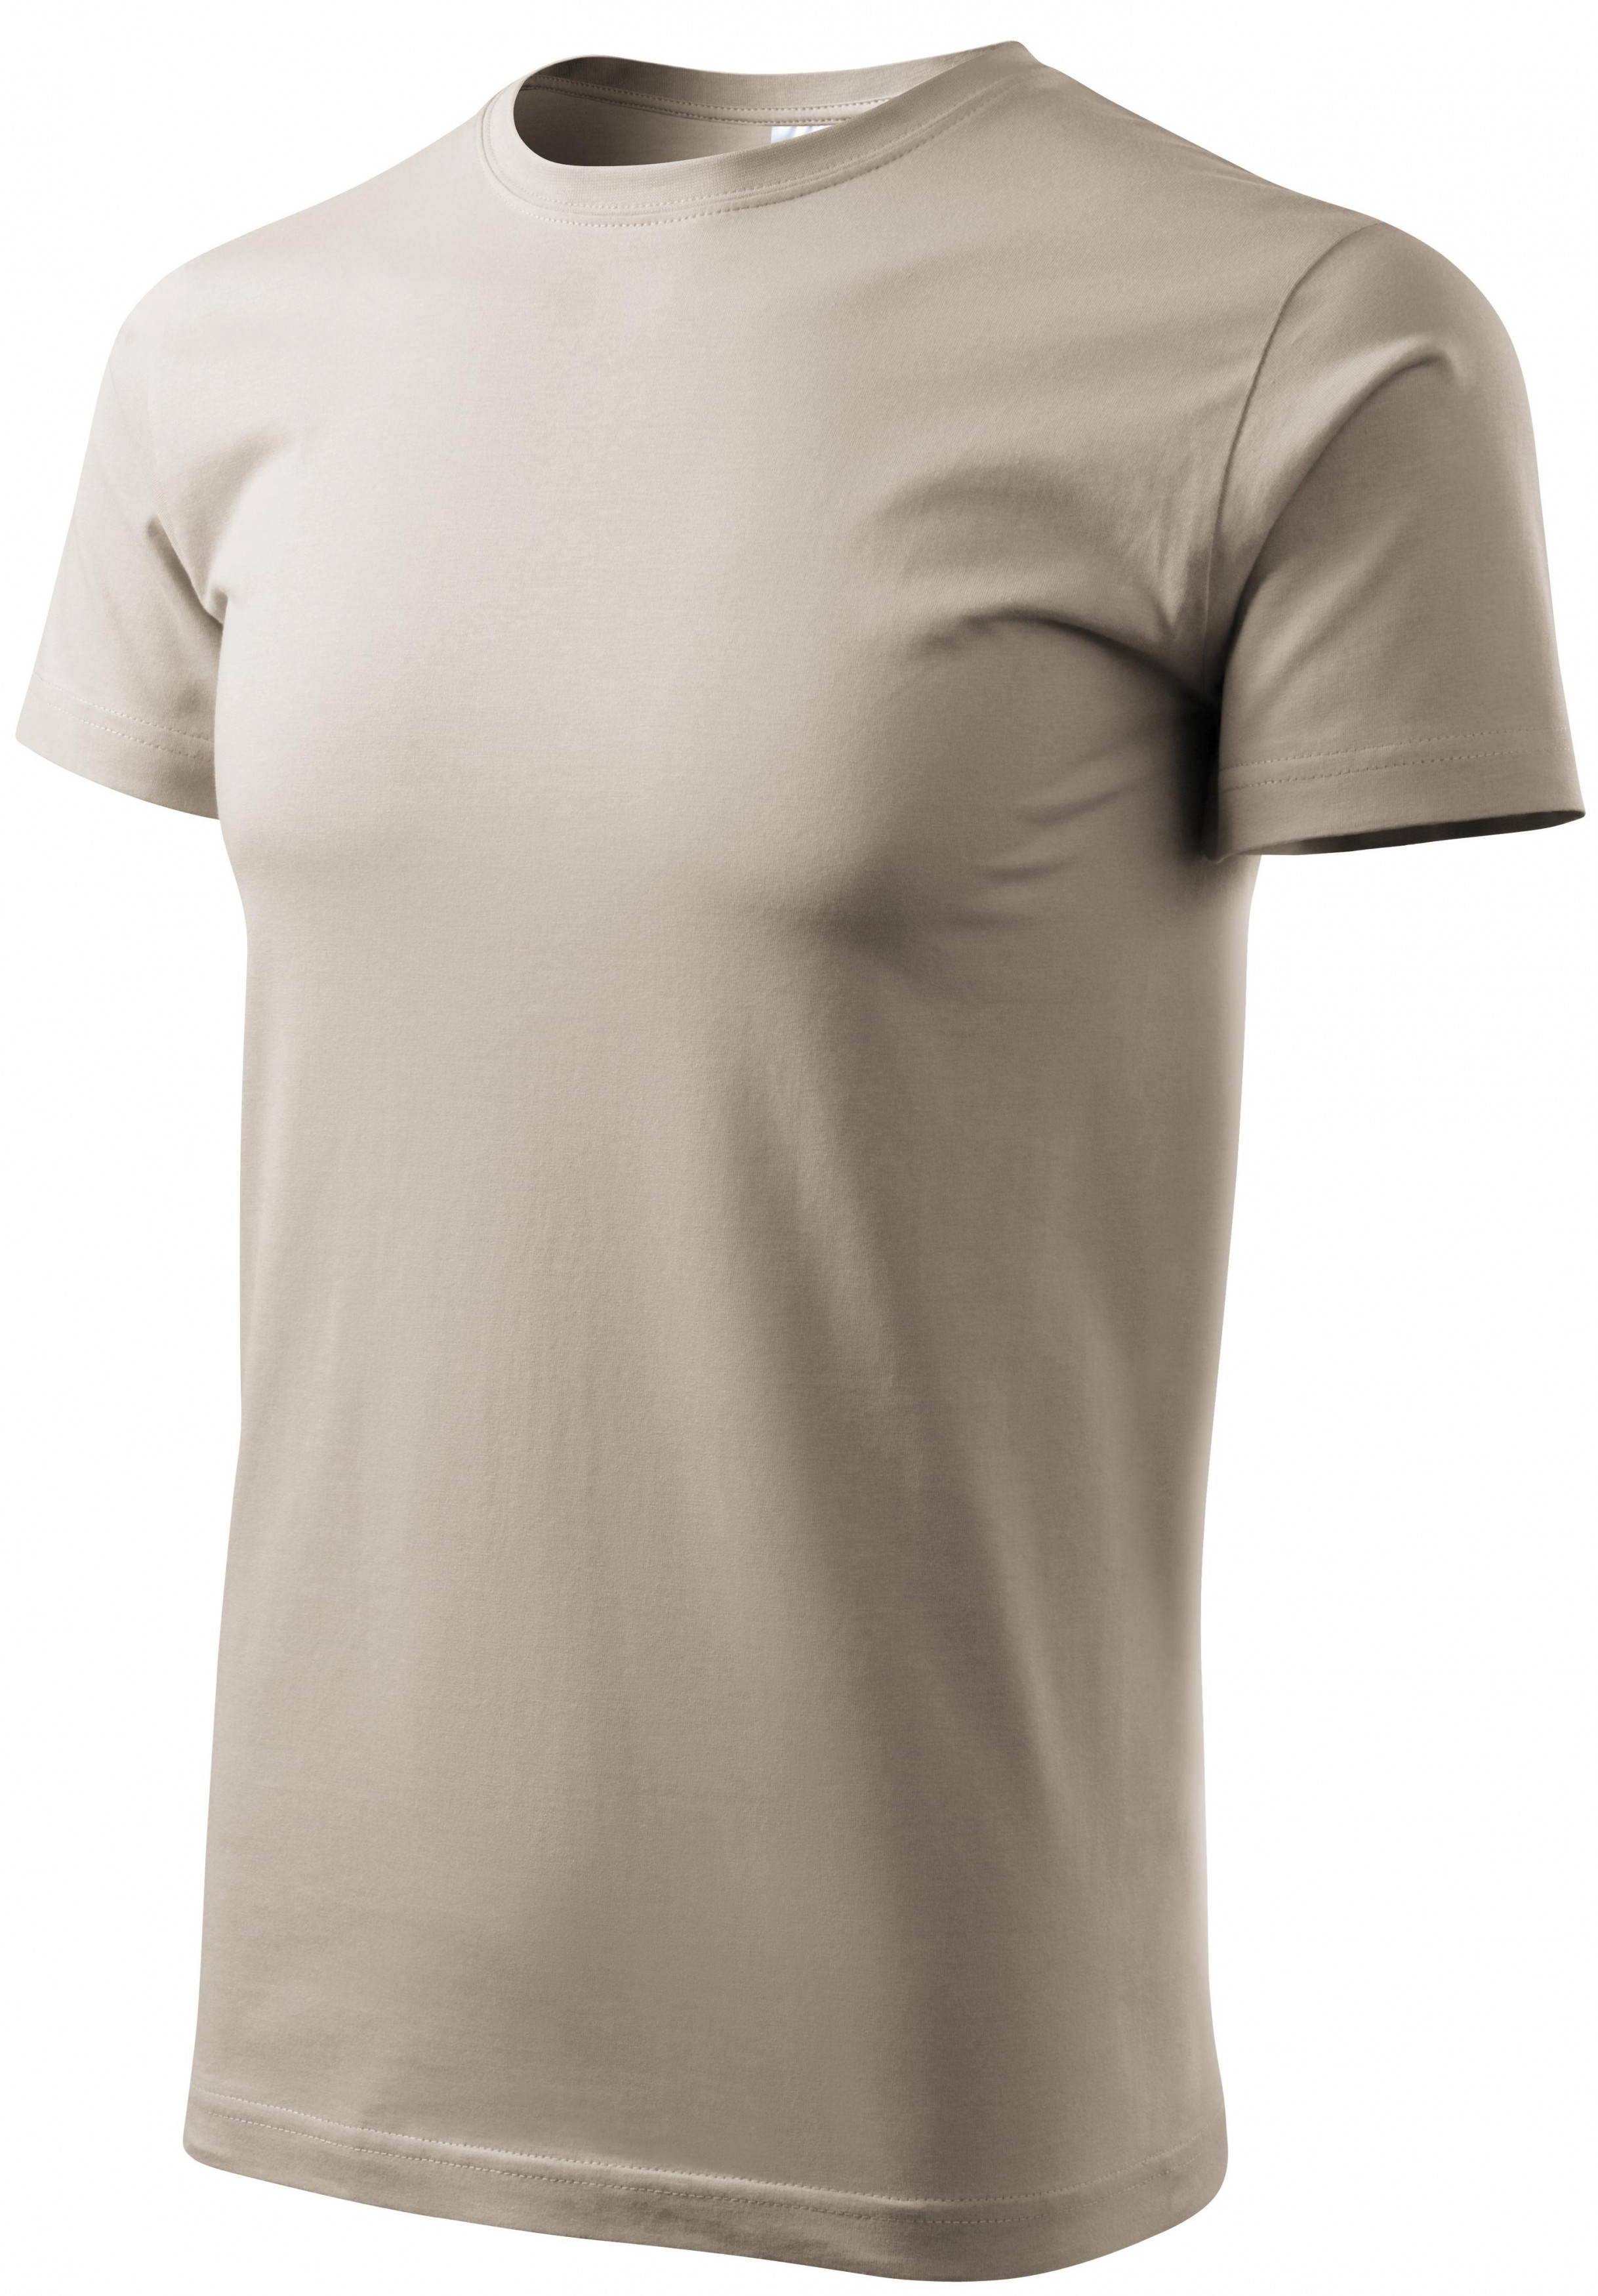 Pánske tričko jednoduché, ľadovo sivá, L